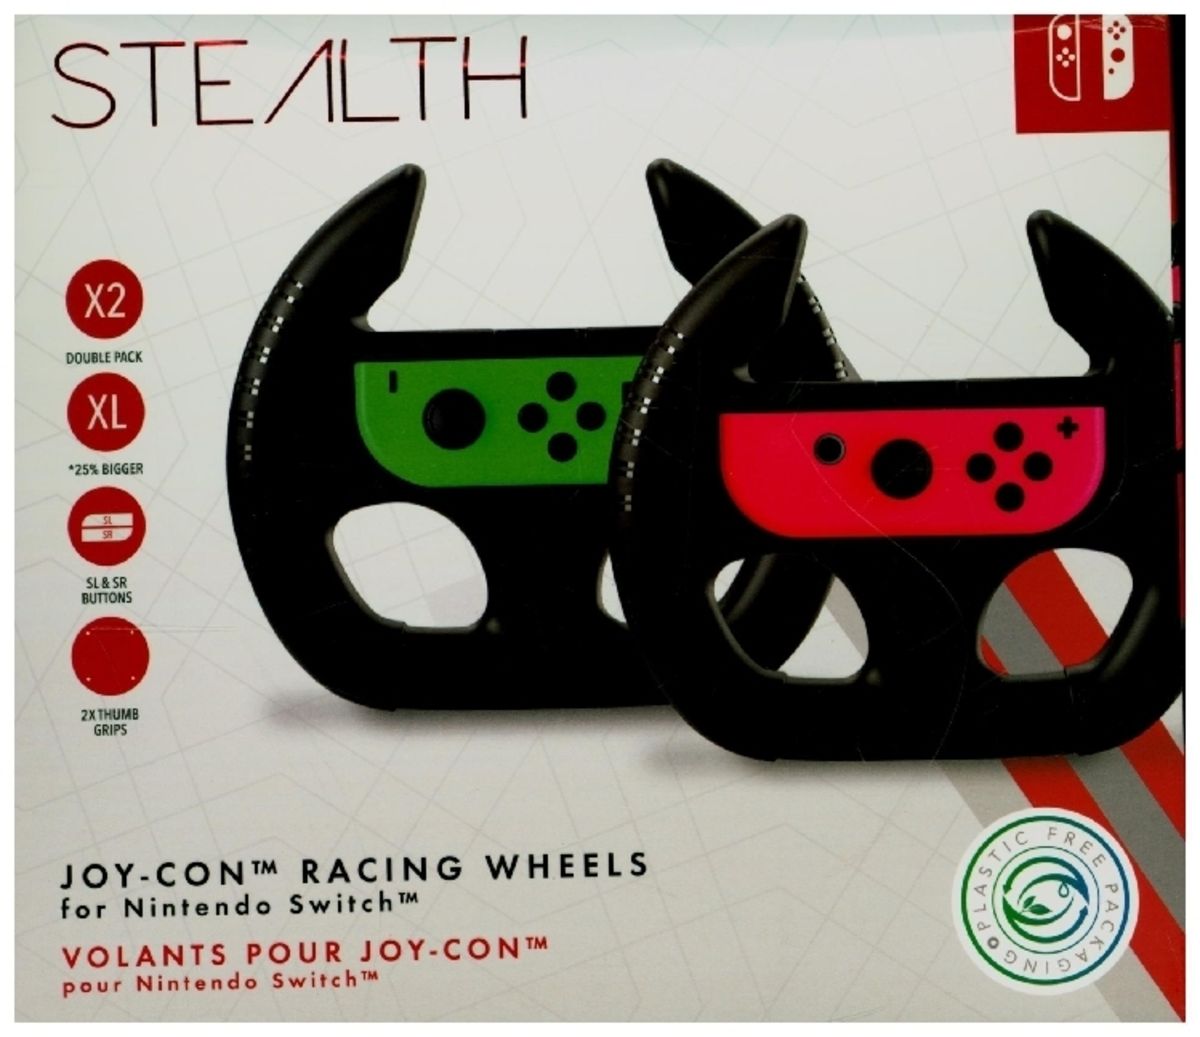 - Nintendo Switch\' für Racing für Joy-Con Lenkrad \'\' kaufen Wheel Doppelpack,